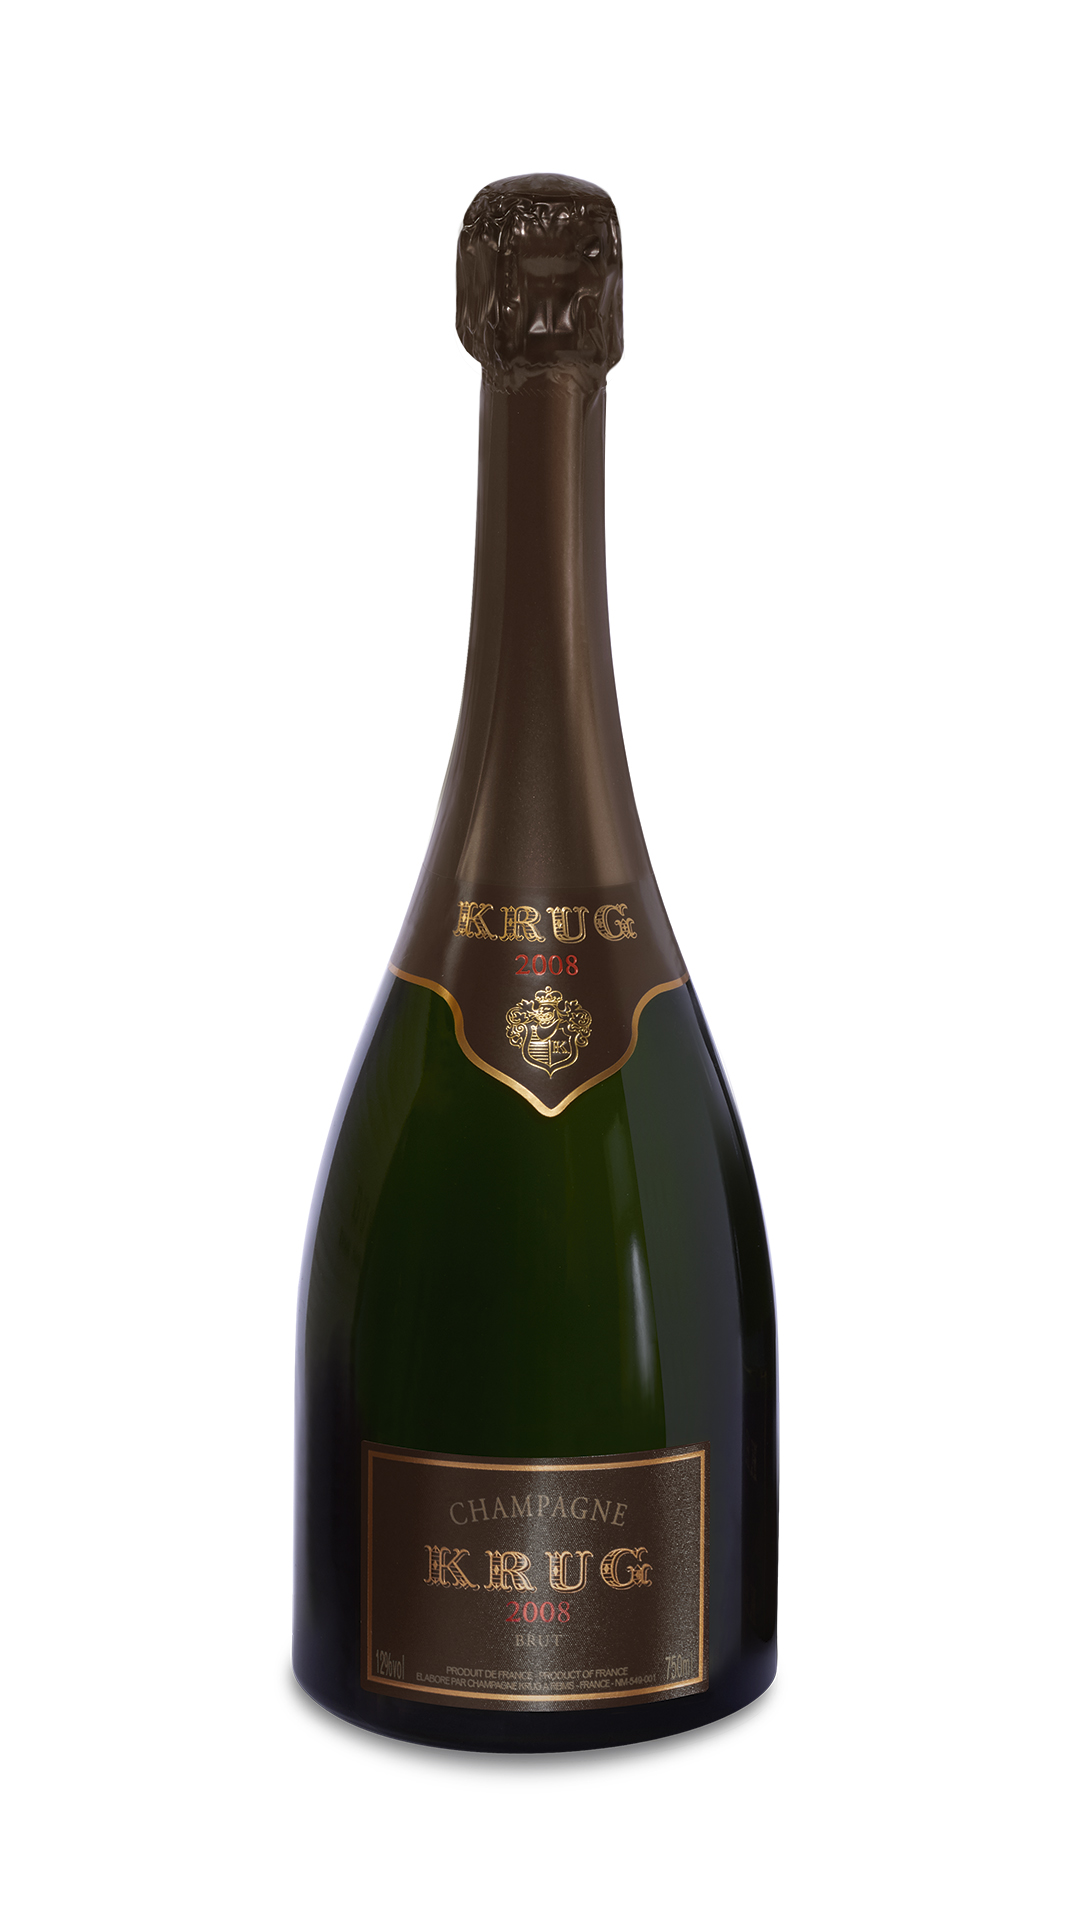 Champagne AOC Brut Vintage 2008